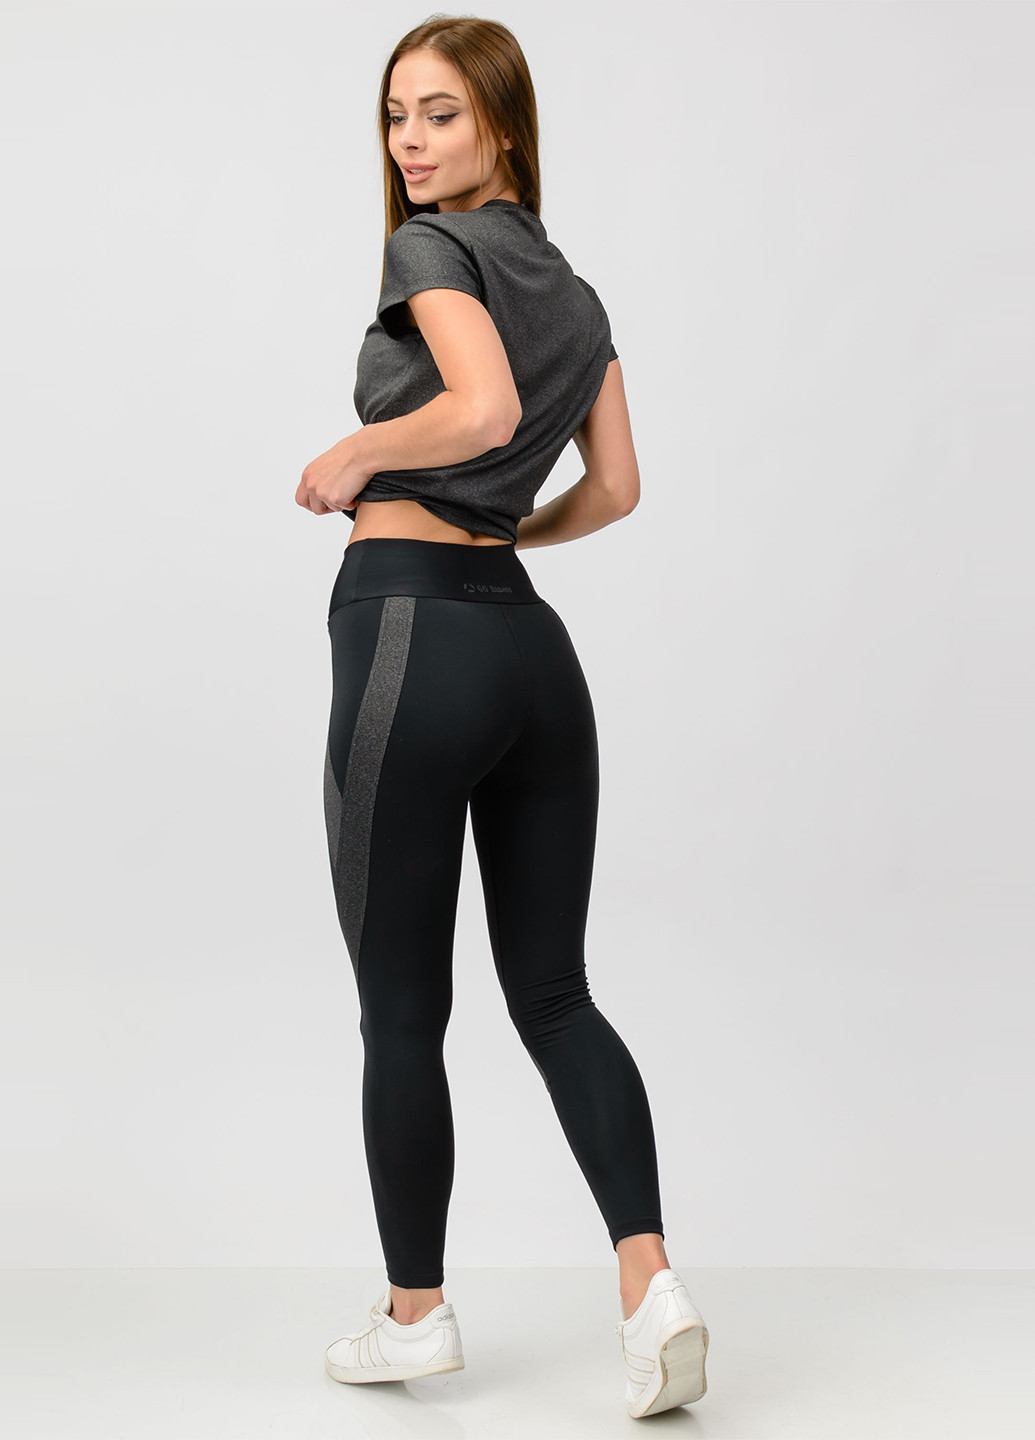 Костюм (футболка, легінси) Go Fitness однотонний темно-сірий спортивний поліестер